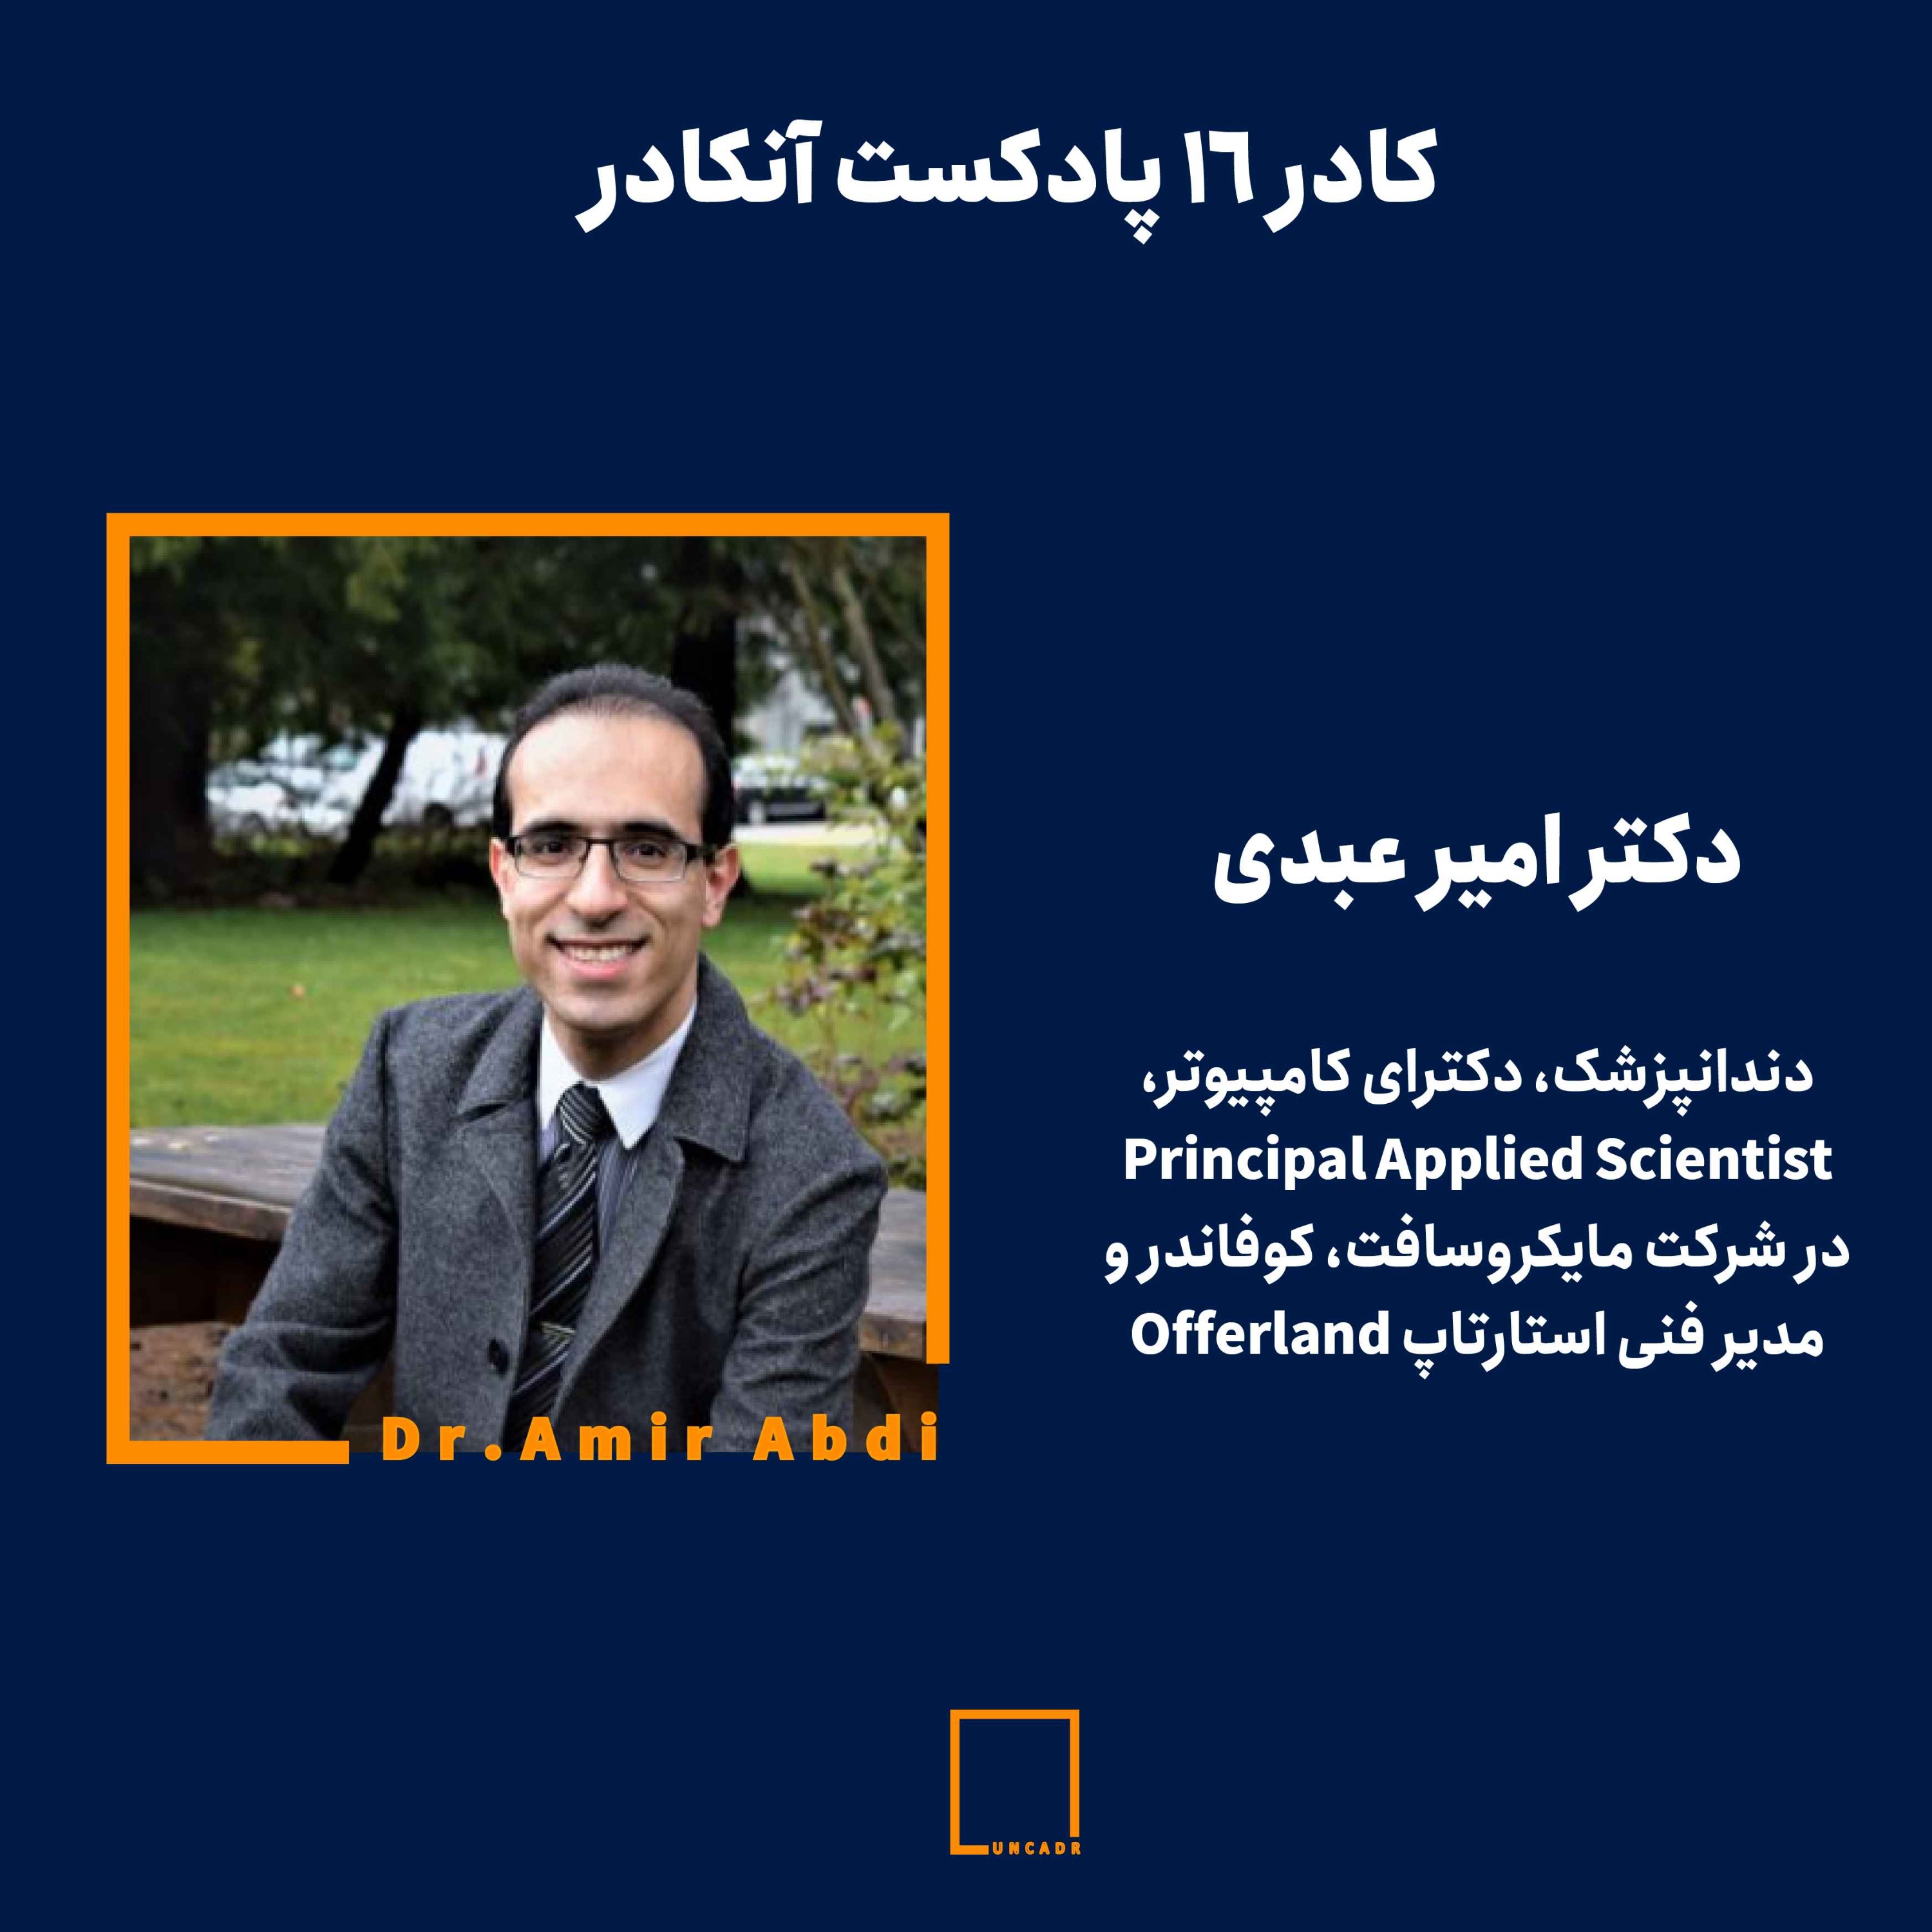 کادر ۱۶ - دکتر امیر عبدی|دندانپزشک، دکترای کامپیوتر، Principal Applied Scientist در شرکت مایکروسافت، کوفاندر و مدیر فنی اس�